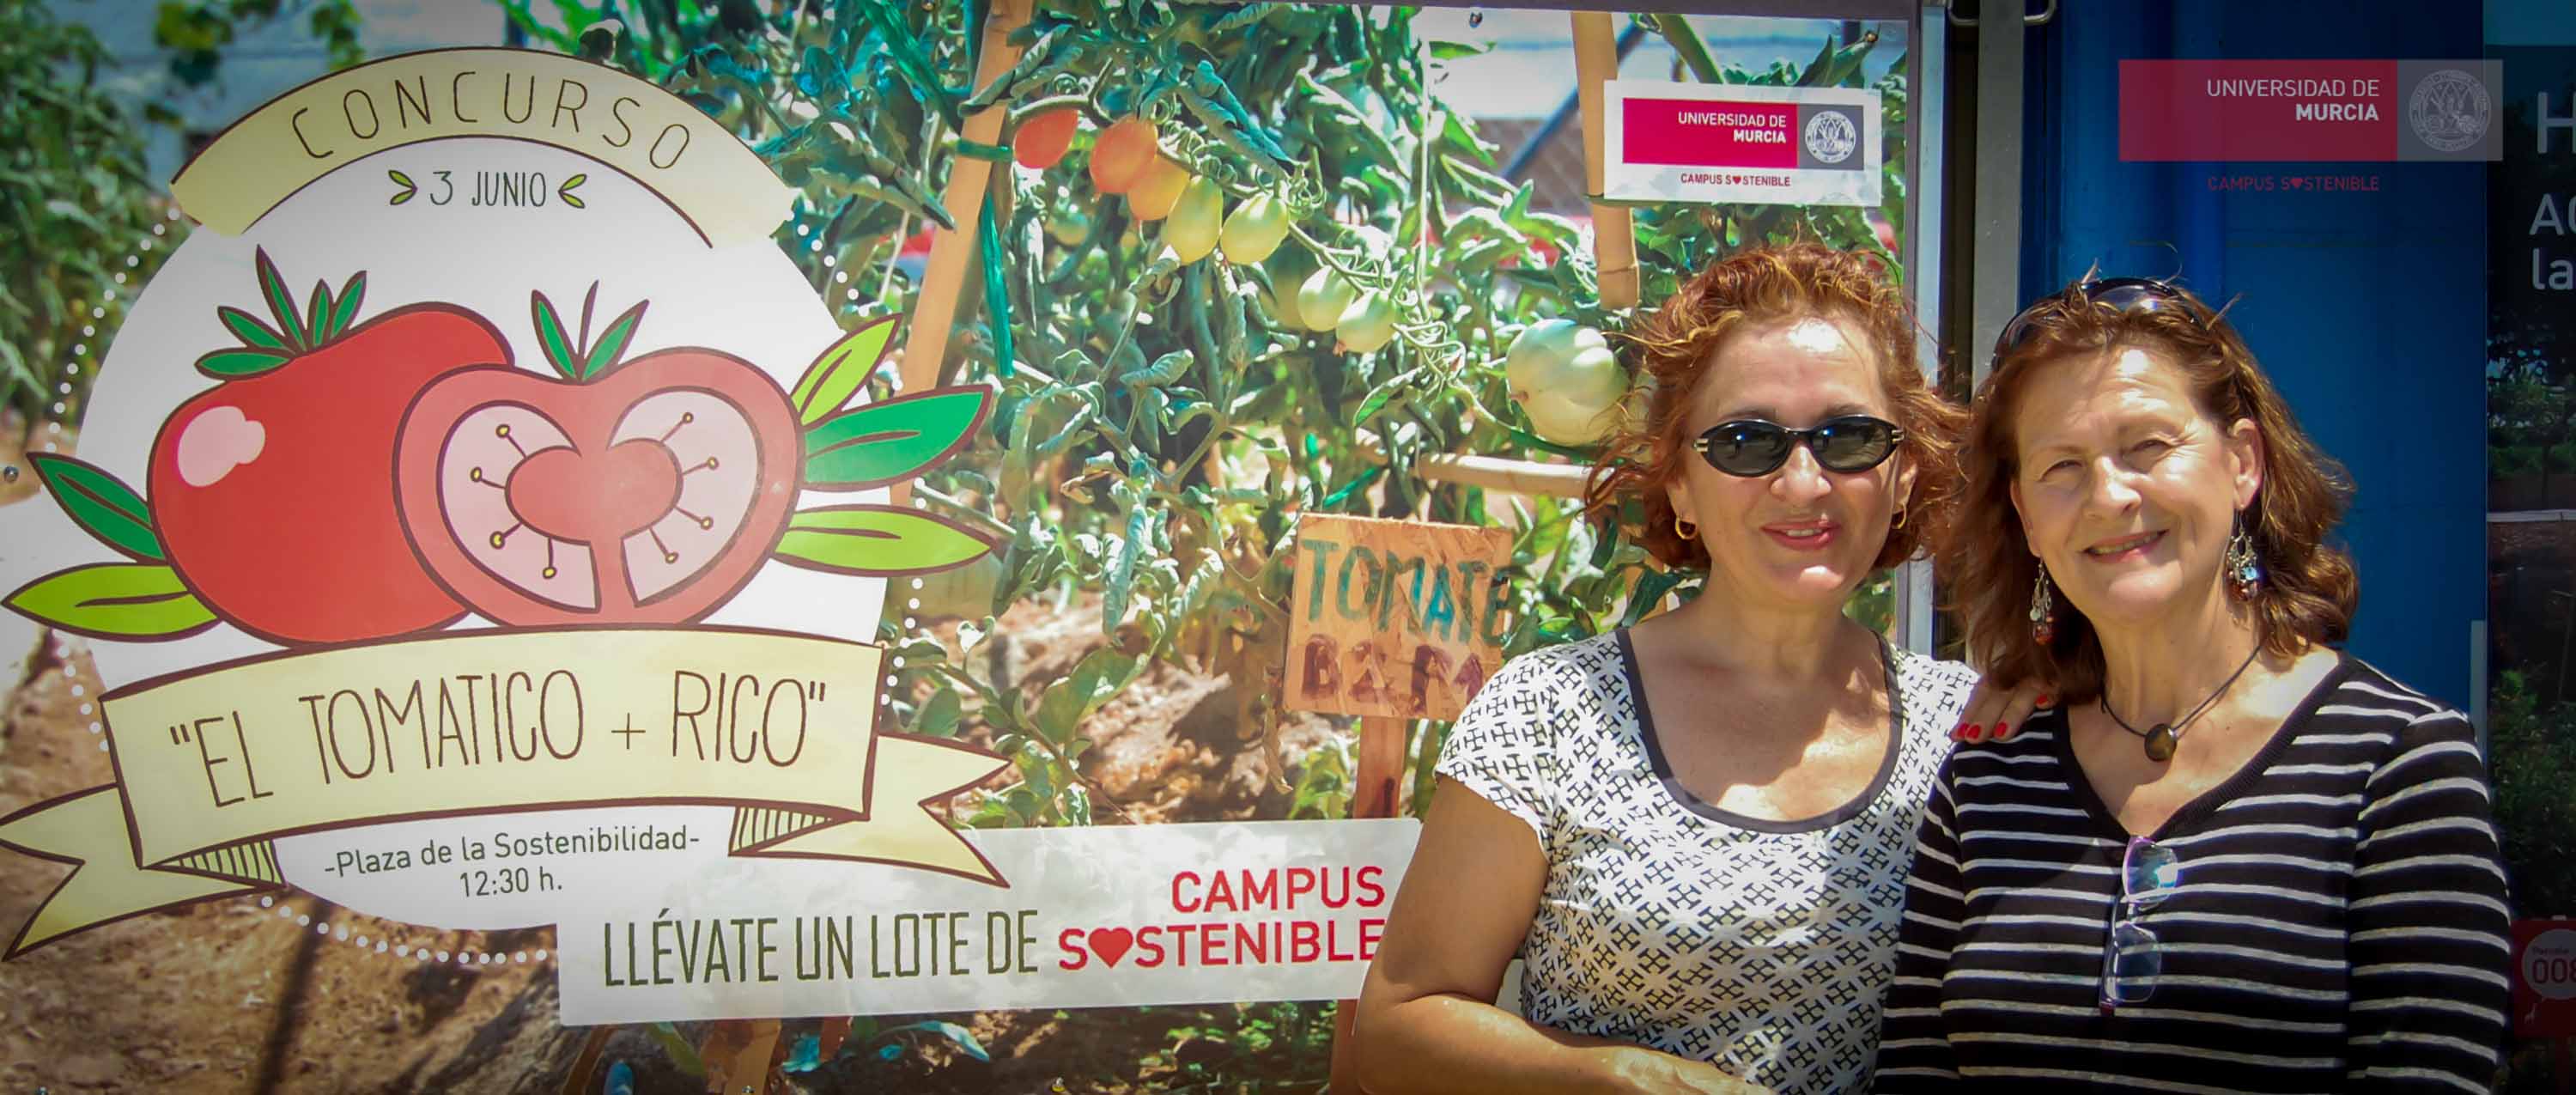 Concurso de tomates ecológicos 2016. UMU.